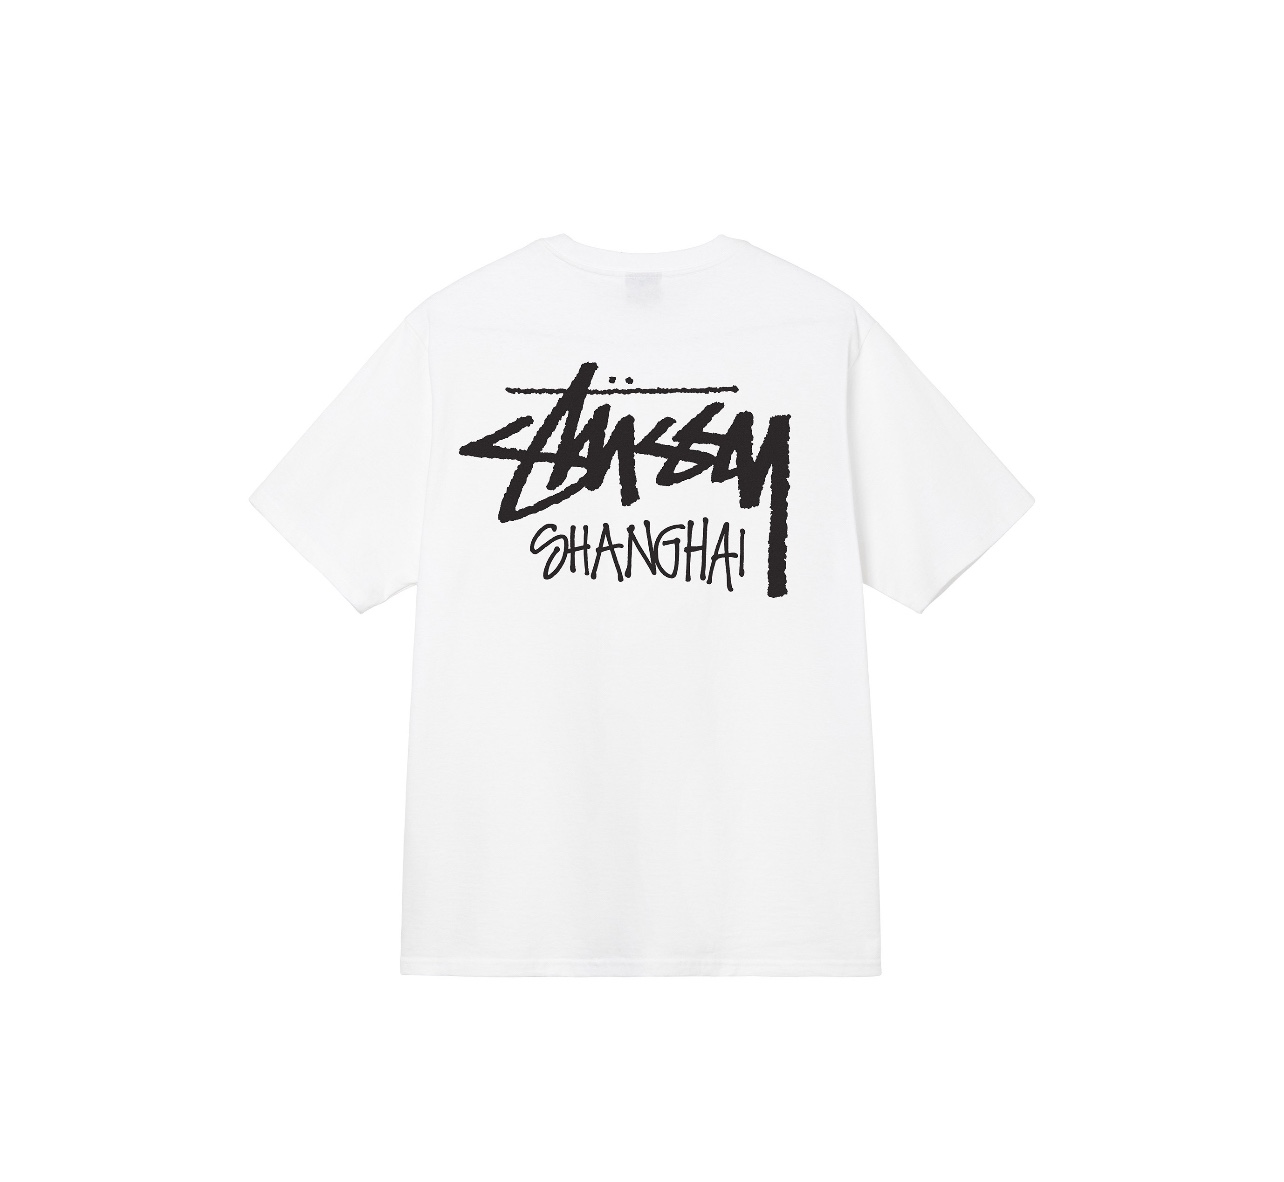 Stussy Clothing T-Shirt Black White Printing Unisex Cotton Short Sleeve